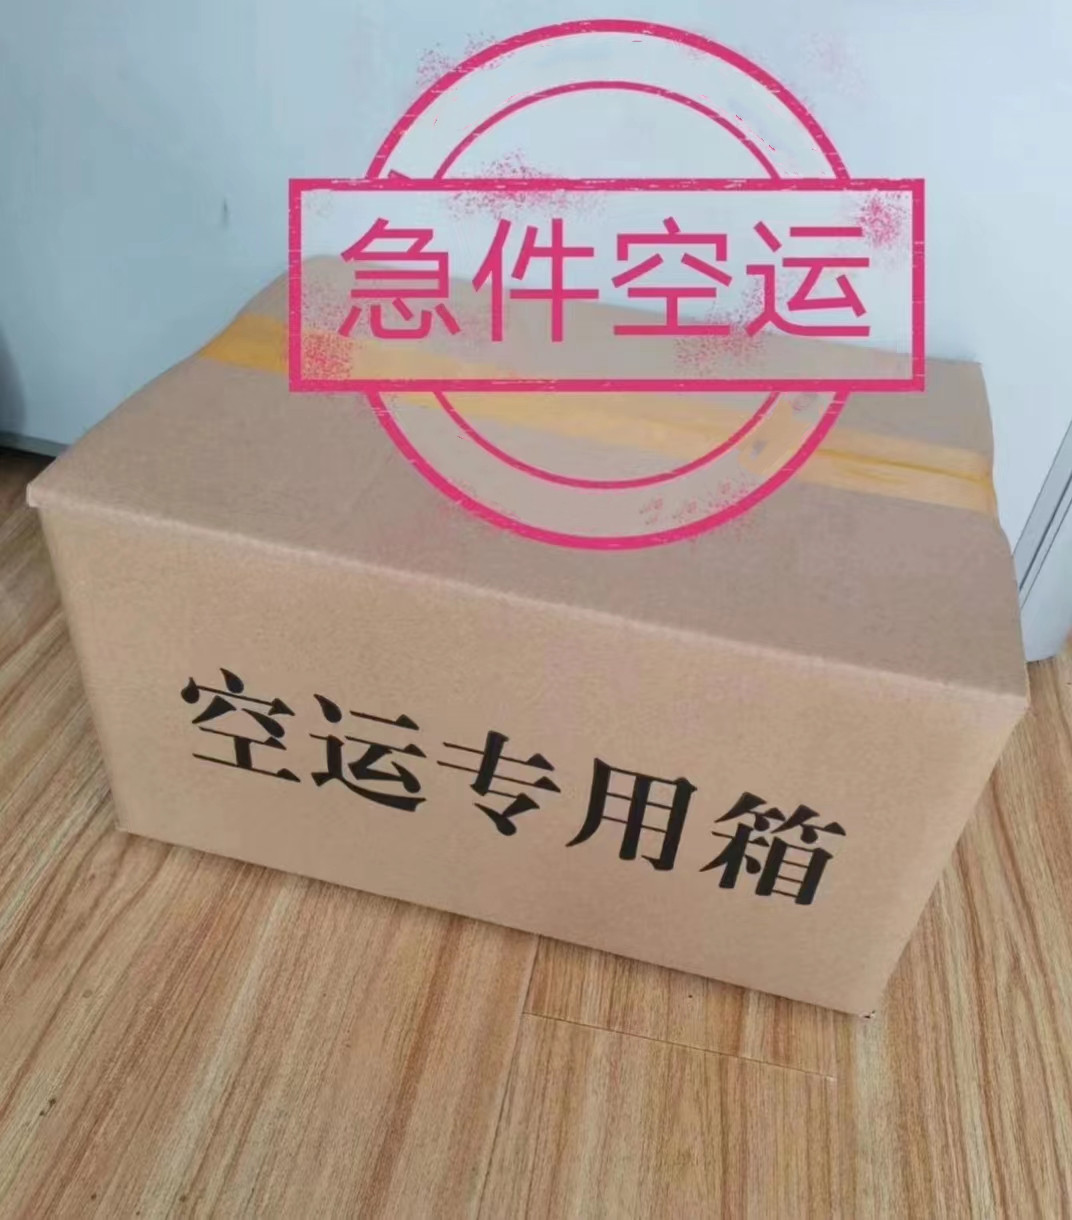 如何来包装标书的上海机场航空急件公司告诉你